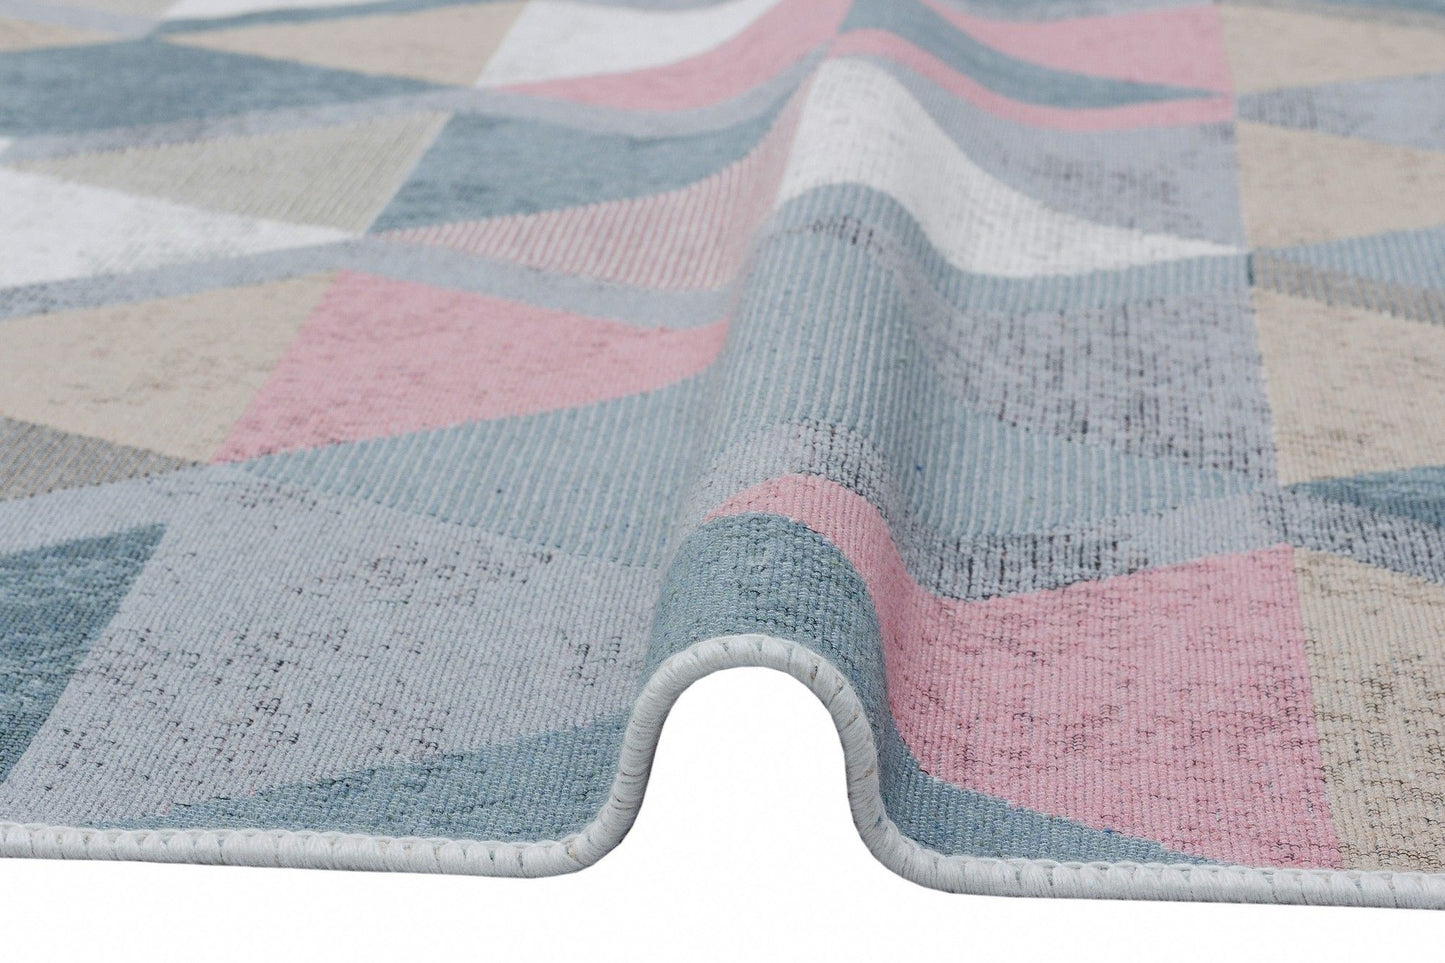 Ar 10 - blå, lyserød - tæppe (120 x 180)